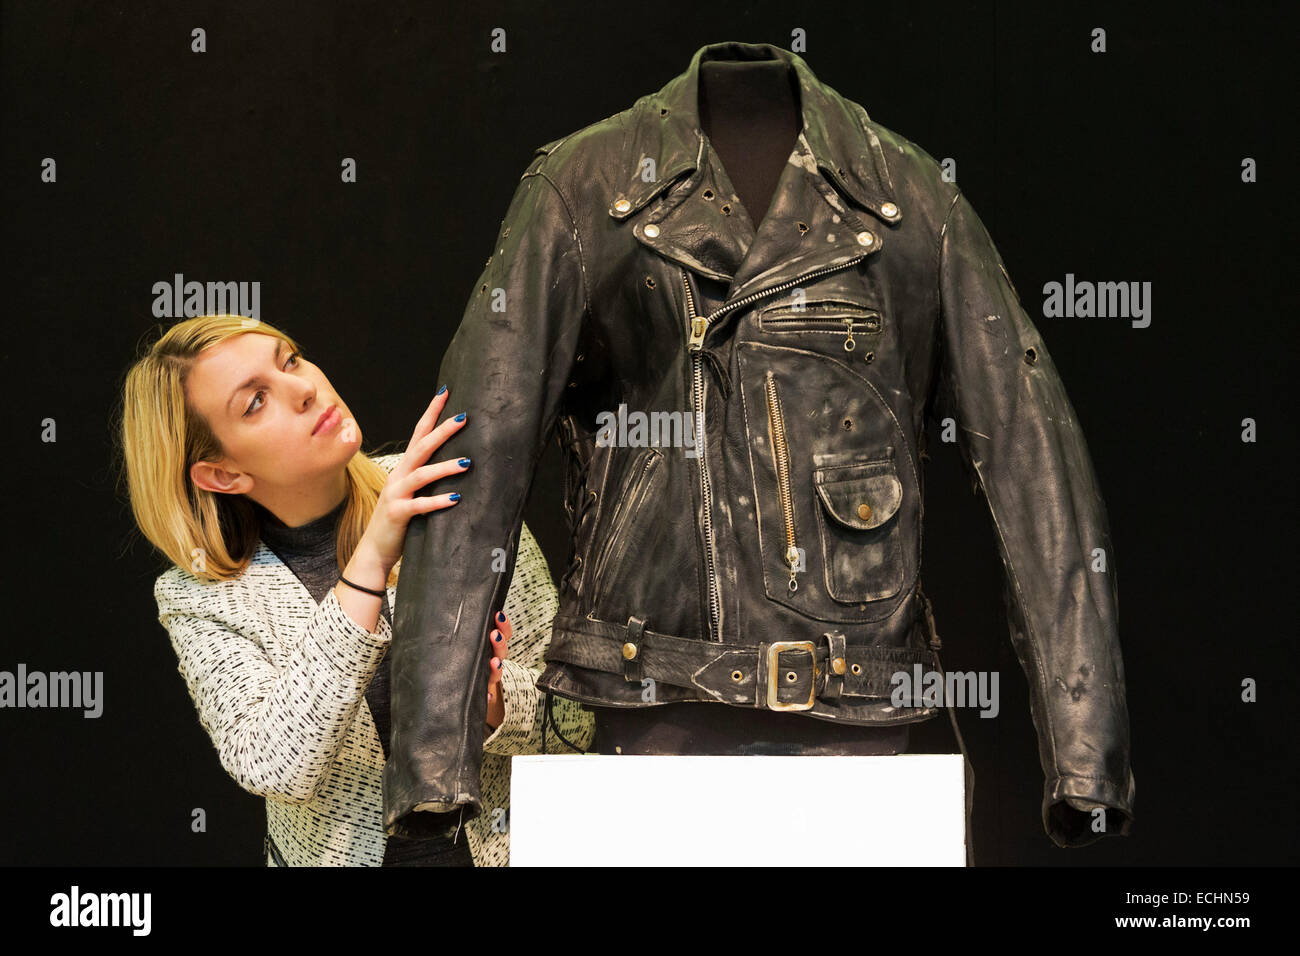 Londres, Royaume-Uni. 12 décembre 2014. Un employé de Christie's ressemble  à une veste en cuir noir pour Arnold Schwarzenegger en tant que le  Terminator dans le film 1991 Terminator 2 : Judgment